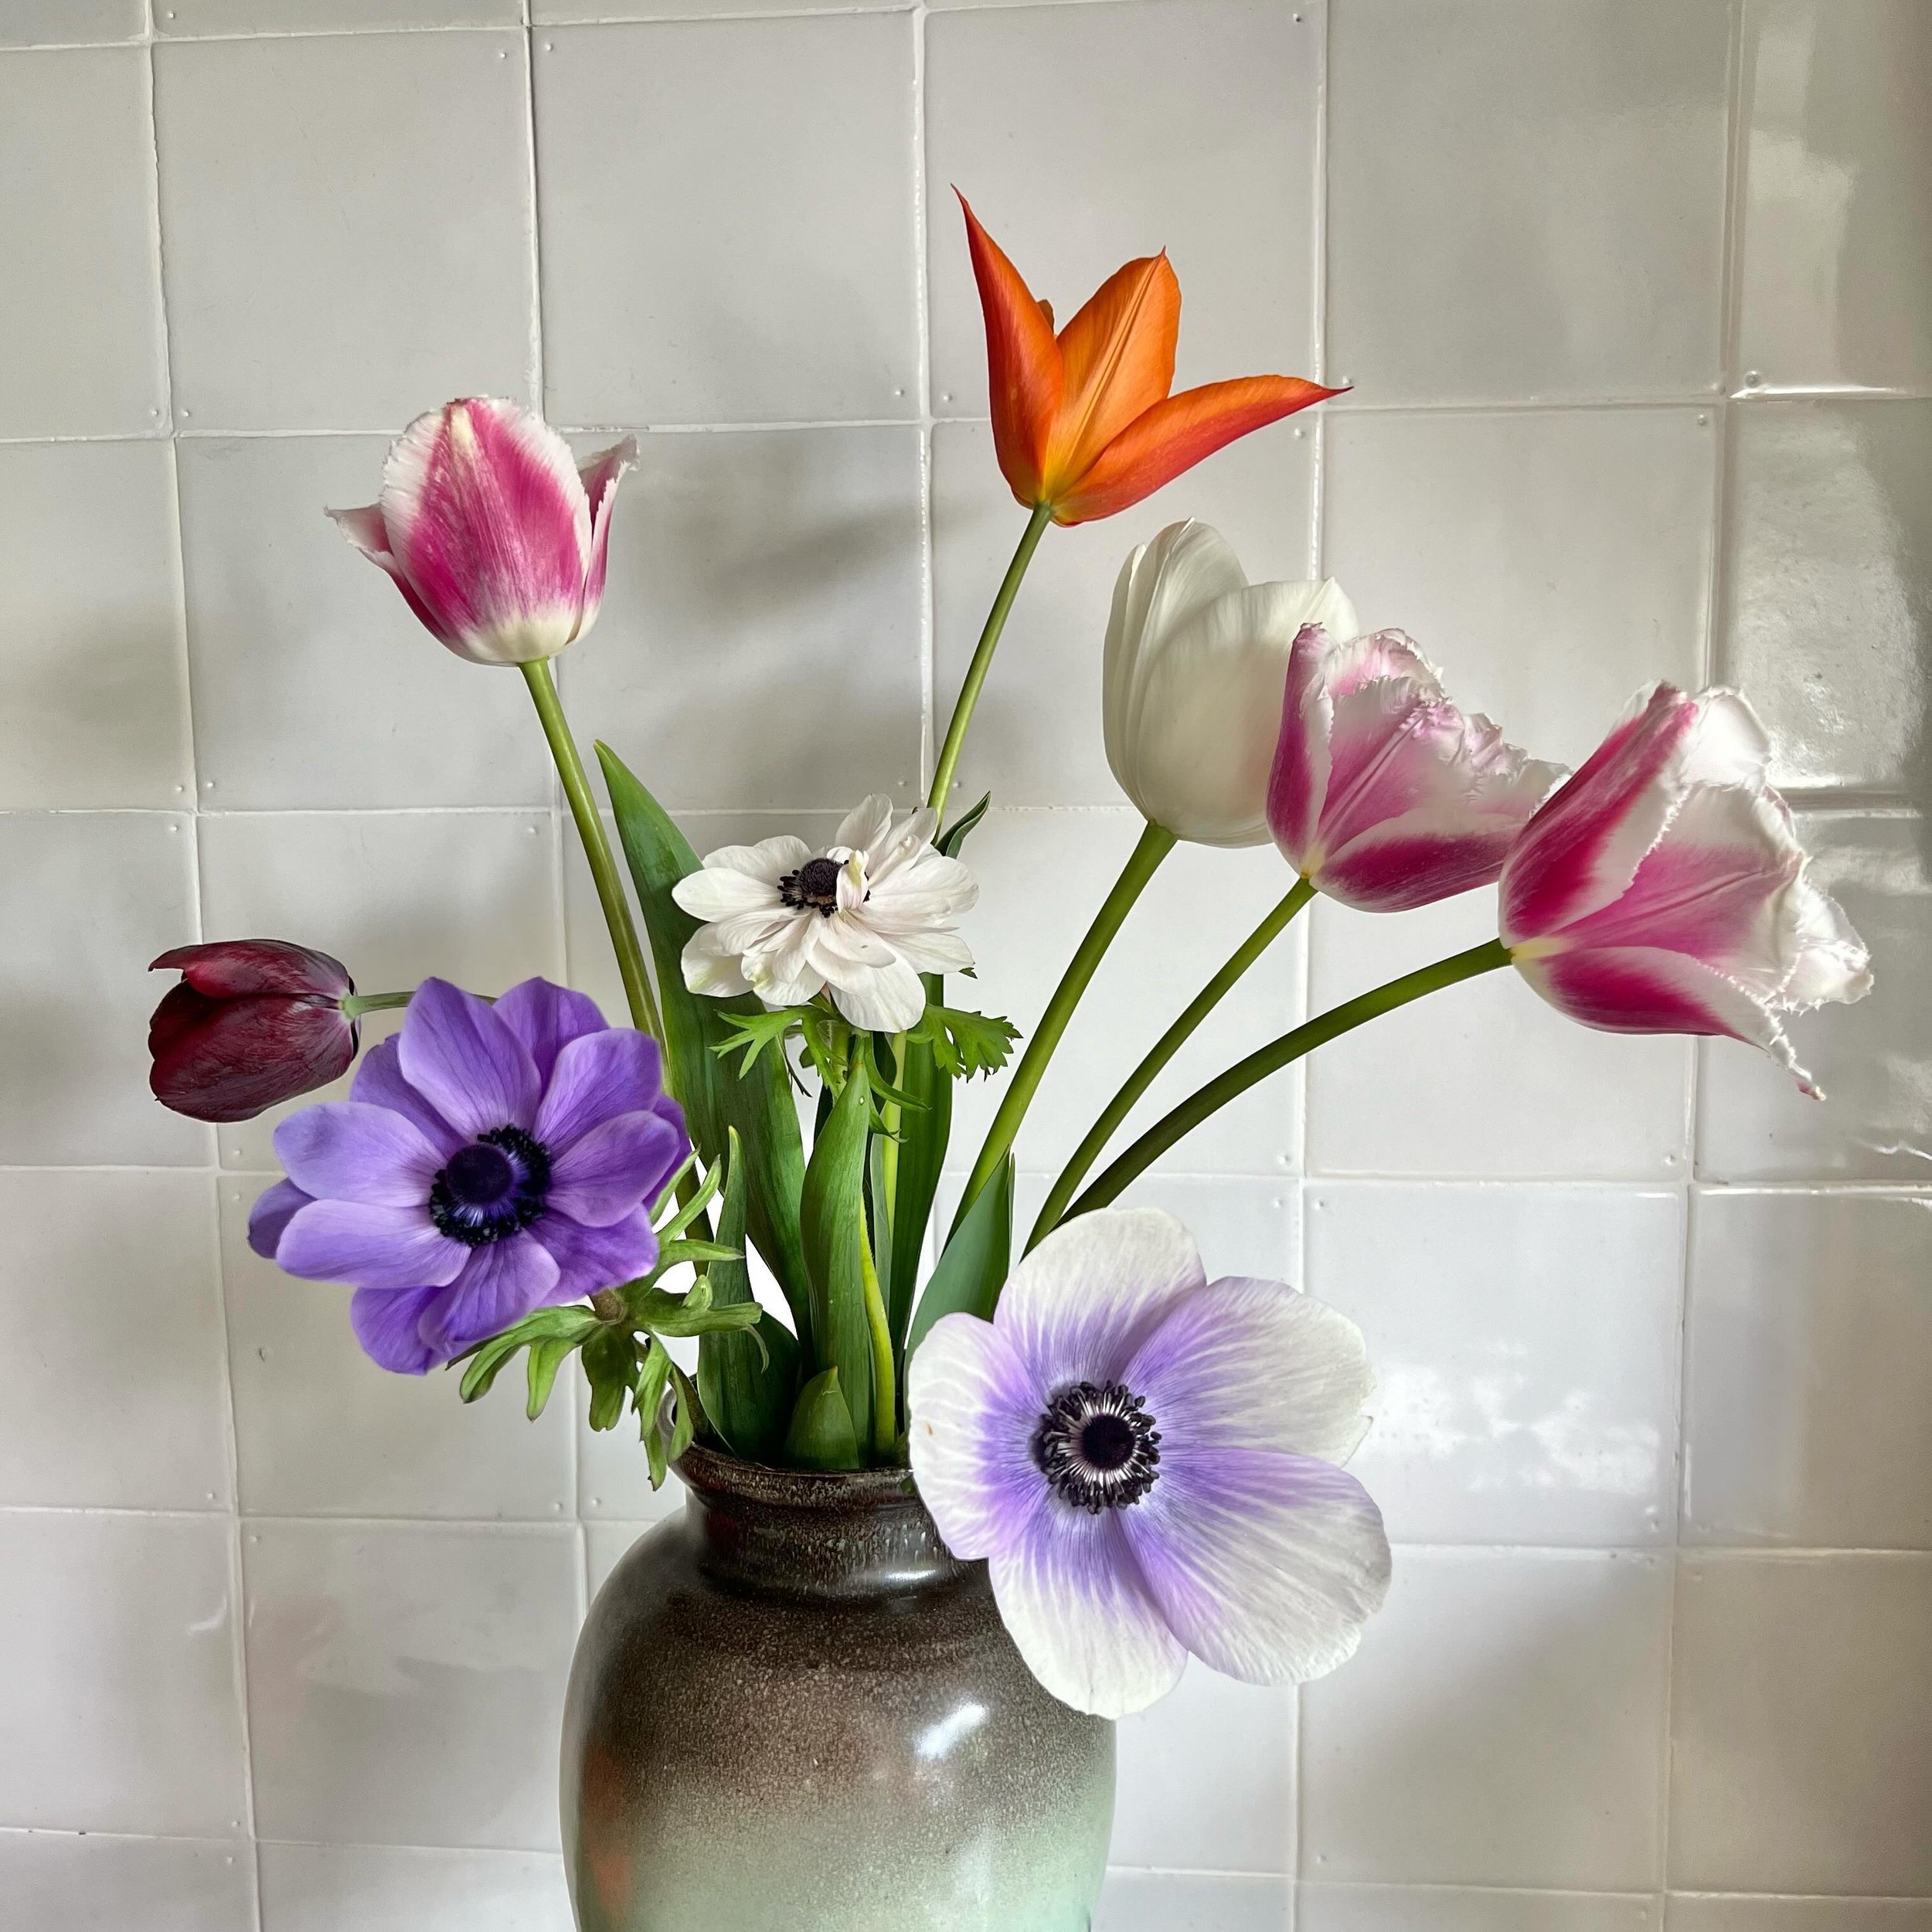 NOG MEER VOORJAAR 🌷&mdash; Na de tulpen staan nu ook de eerste anemonen in bloei. Waarschijnlijk nog niet voldoende om ze aanstaande zondag mee te nemen naar de Voorjaarsfair in het Rumpts Kerkje, maar tulpen neem ik zeker mee. En het fijne is: ze z